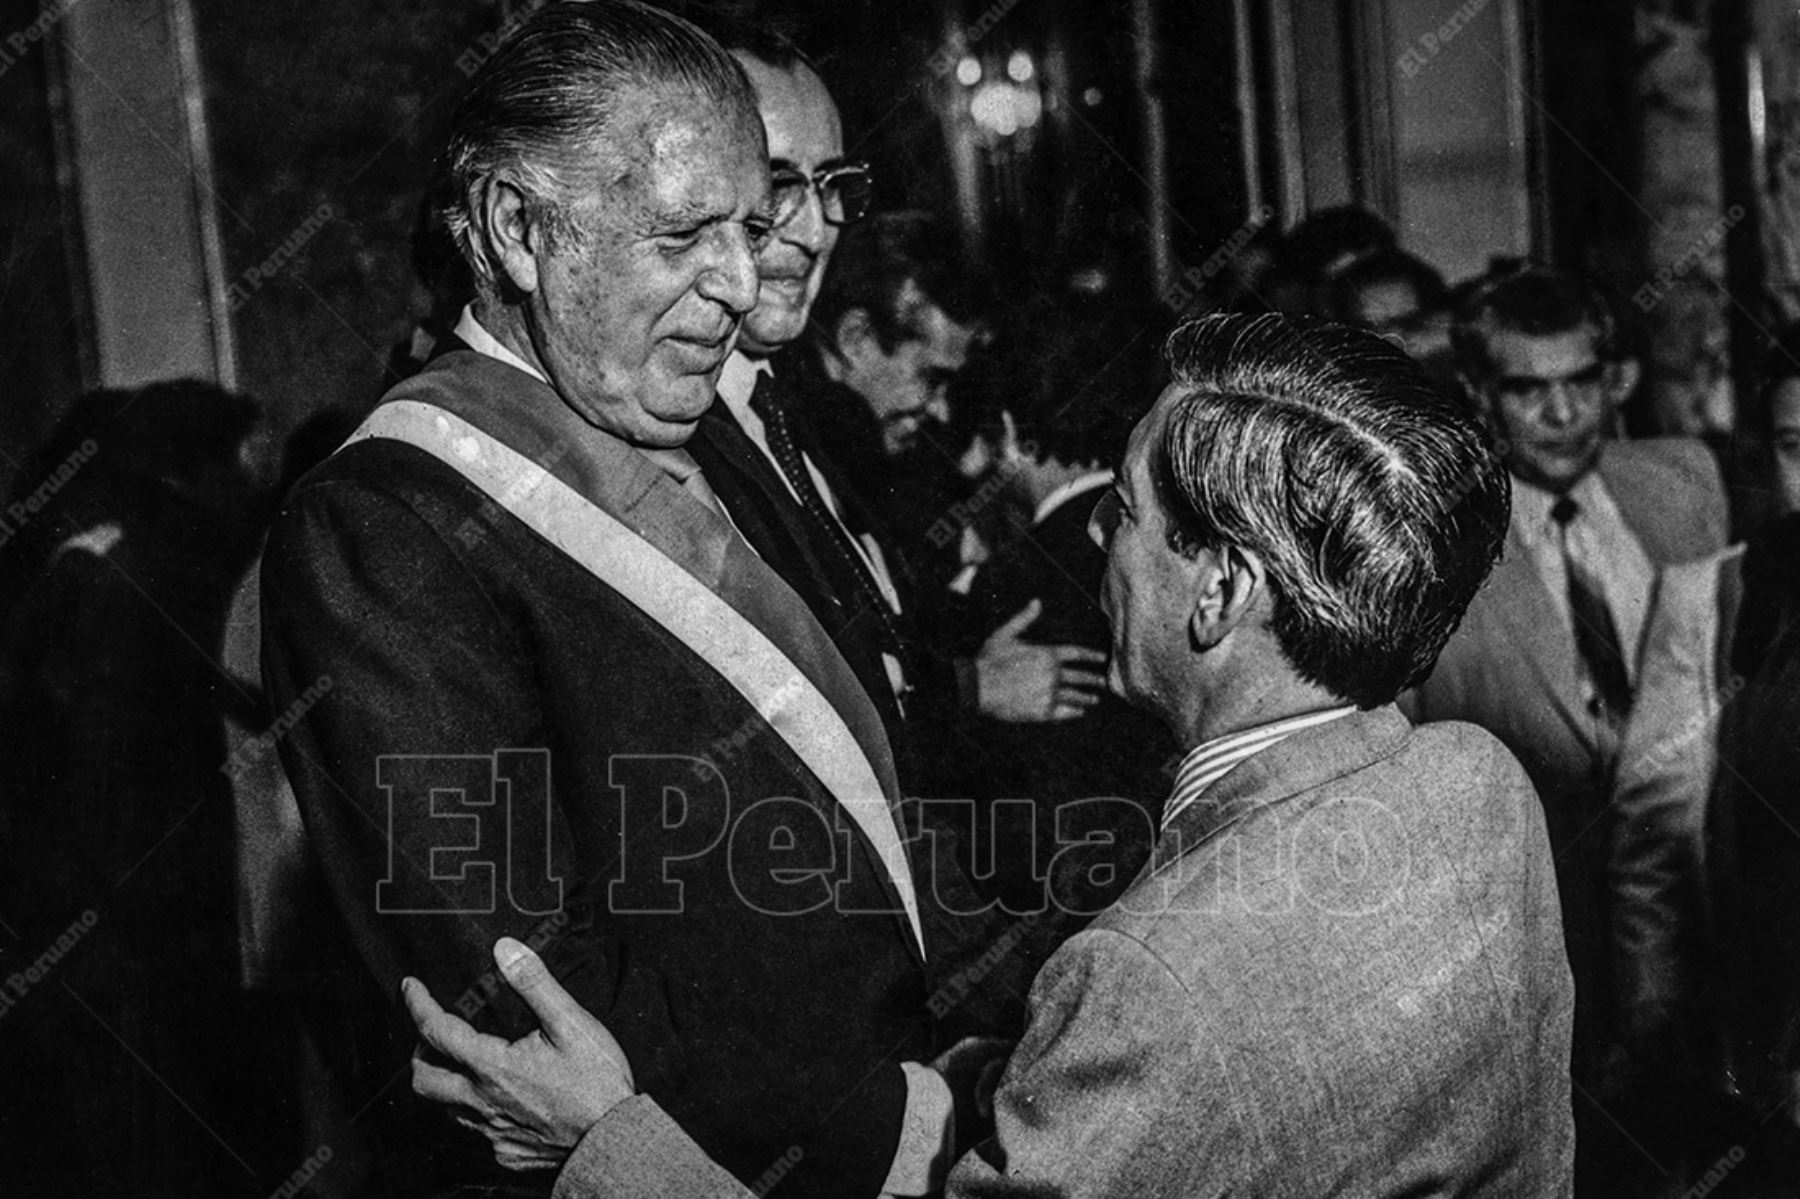 Lima - 11 abril 1984 / El presidente Fernando Belaunde Terry recibe el saludo del escritor Mario Vargas Llosa en Palacio de Gobierno luego de la juramentación del nuevo gabinete ministerial. Foto: Archivo Histórico de El Peruano / Norman Córdova